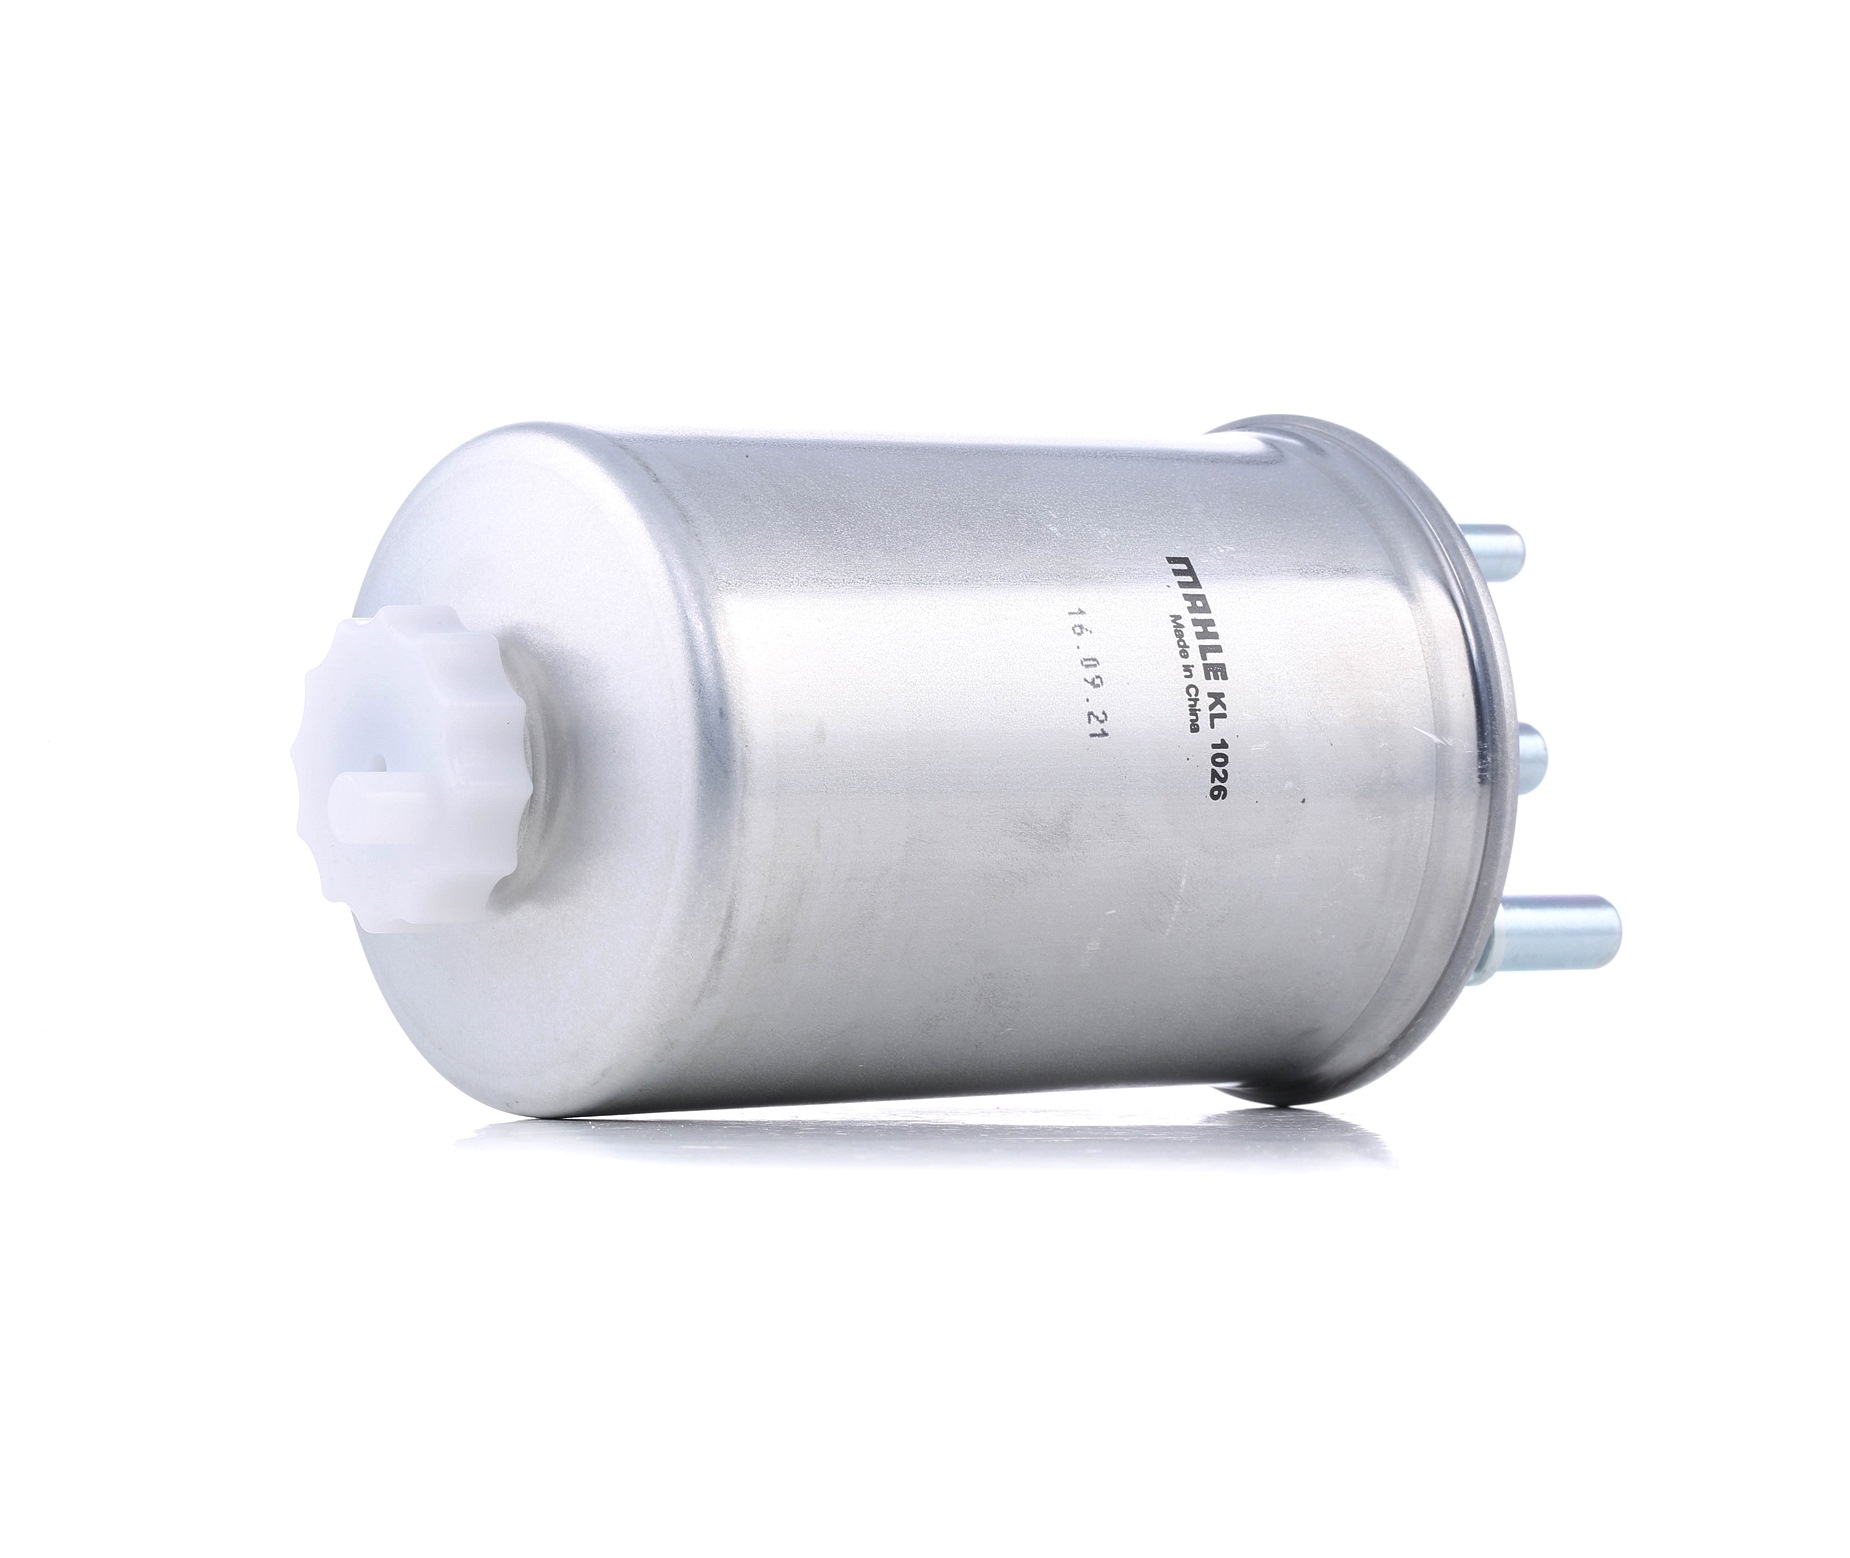 MAHLE ORIGINAL KL 1026 Fuel filter In-Line Filter, 10mm, 9,9mm